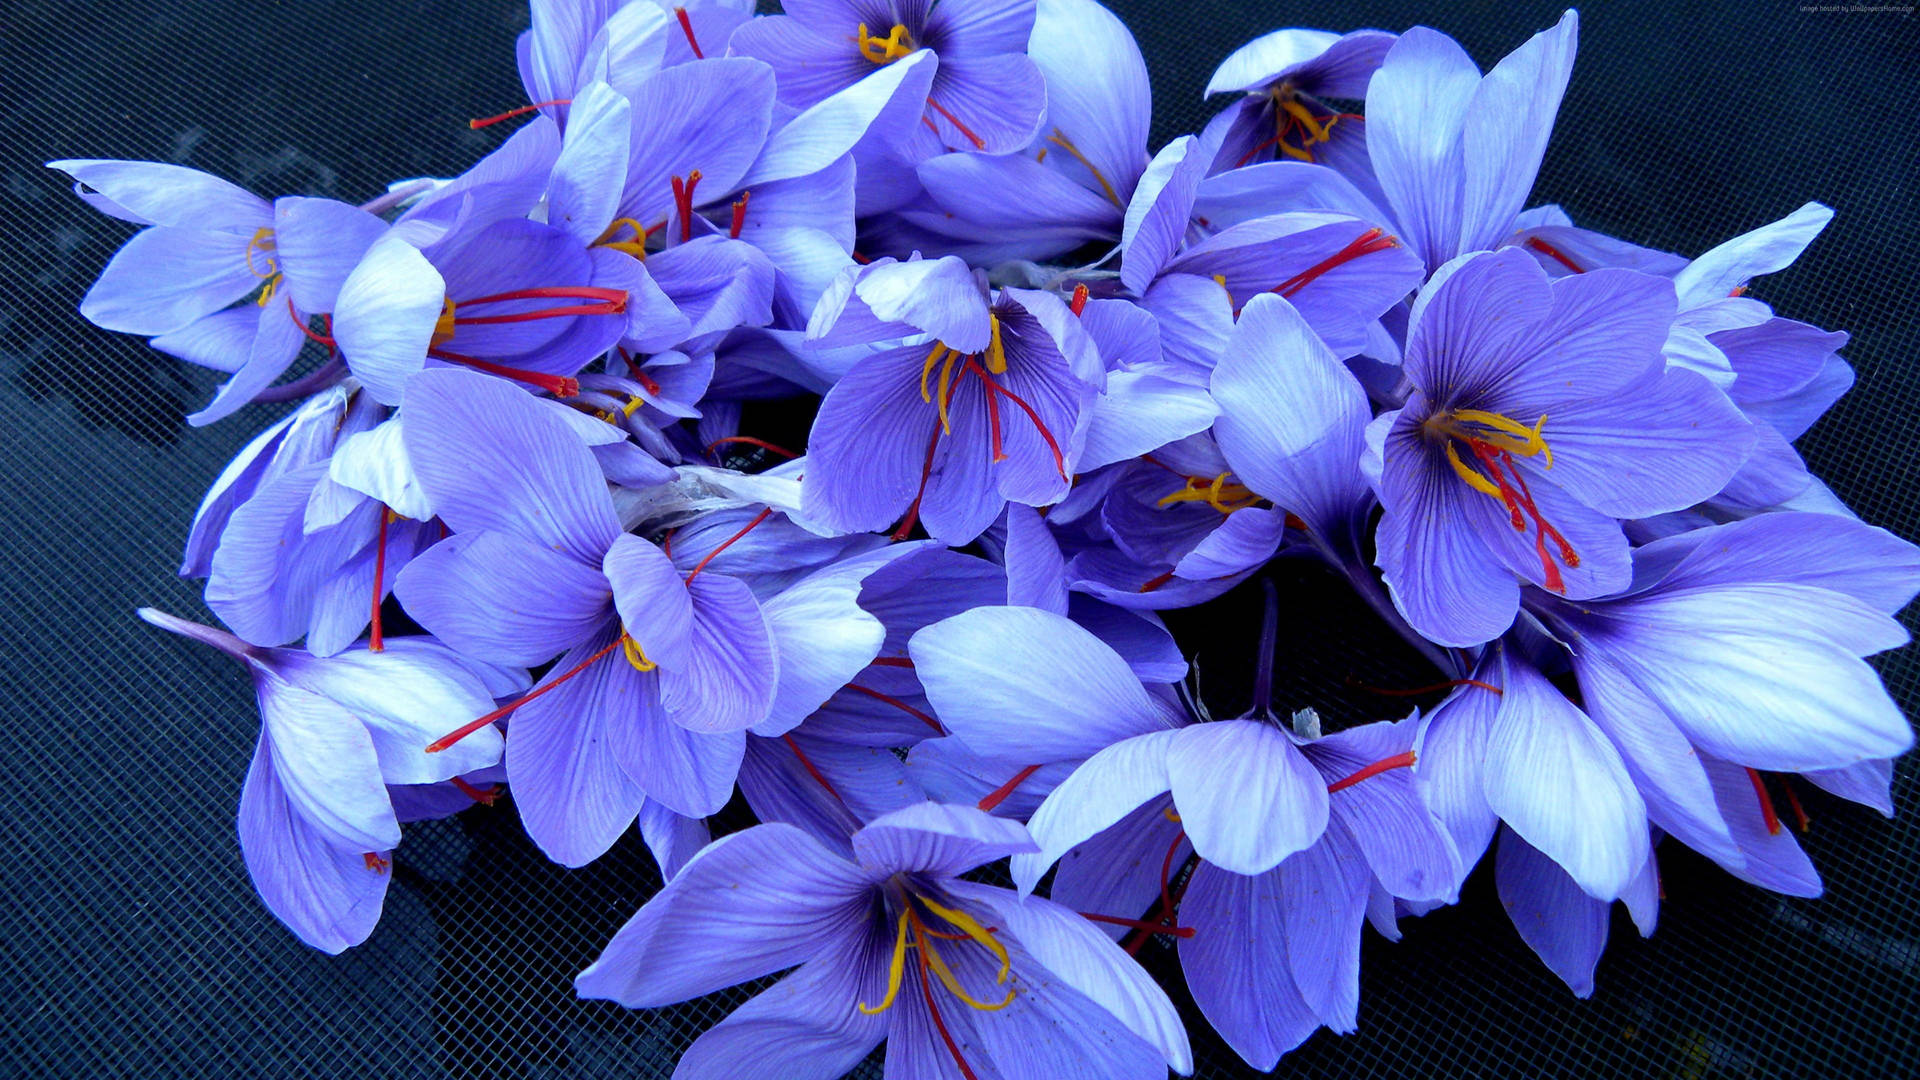 Blue Saffron Crocus Flowers Background